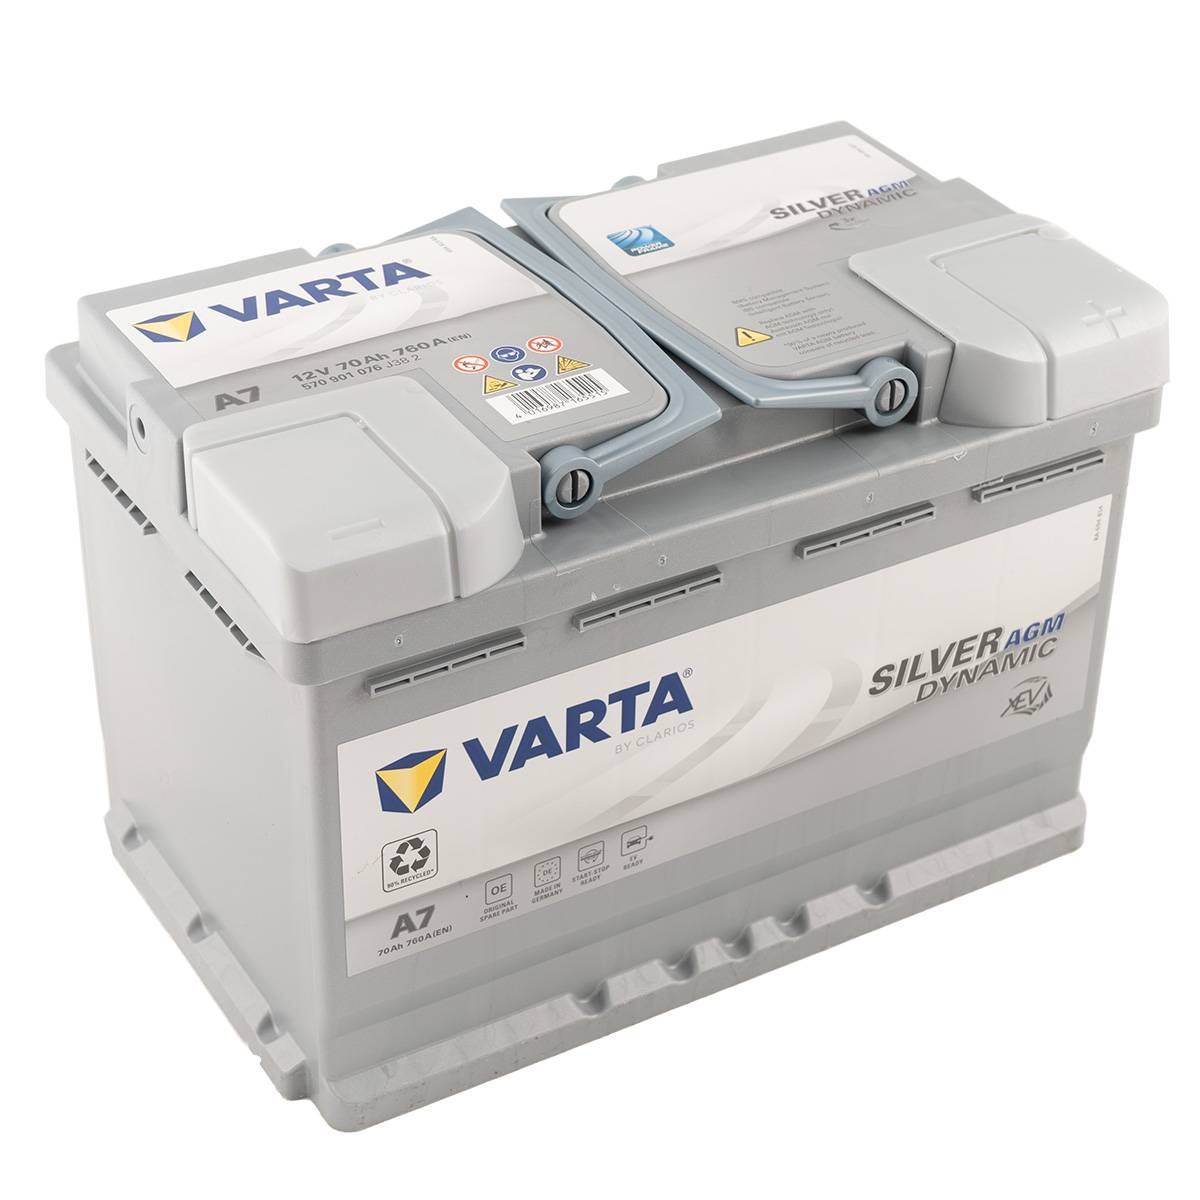 VARTA A7 Silver Dynamic AGM 12V 70Ah 760A Autobatterie Start-Stop 570 901 076